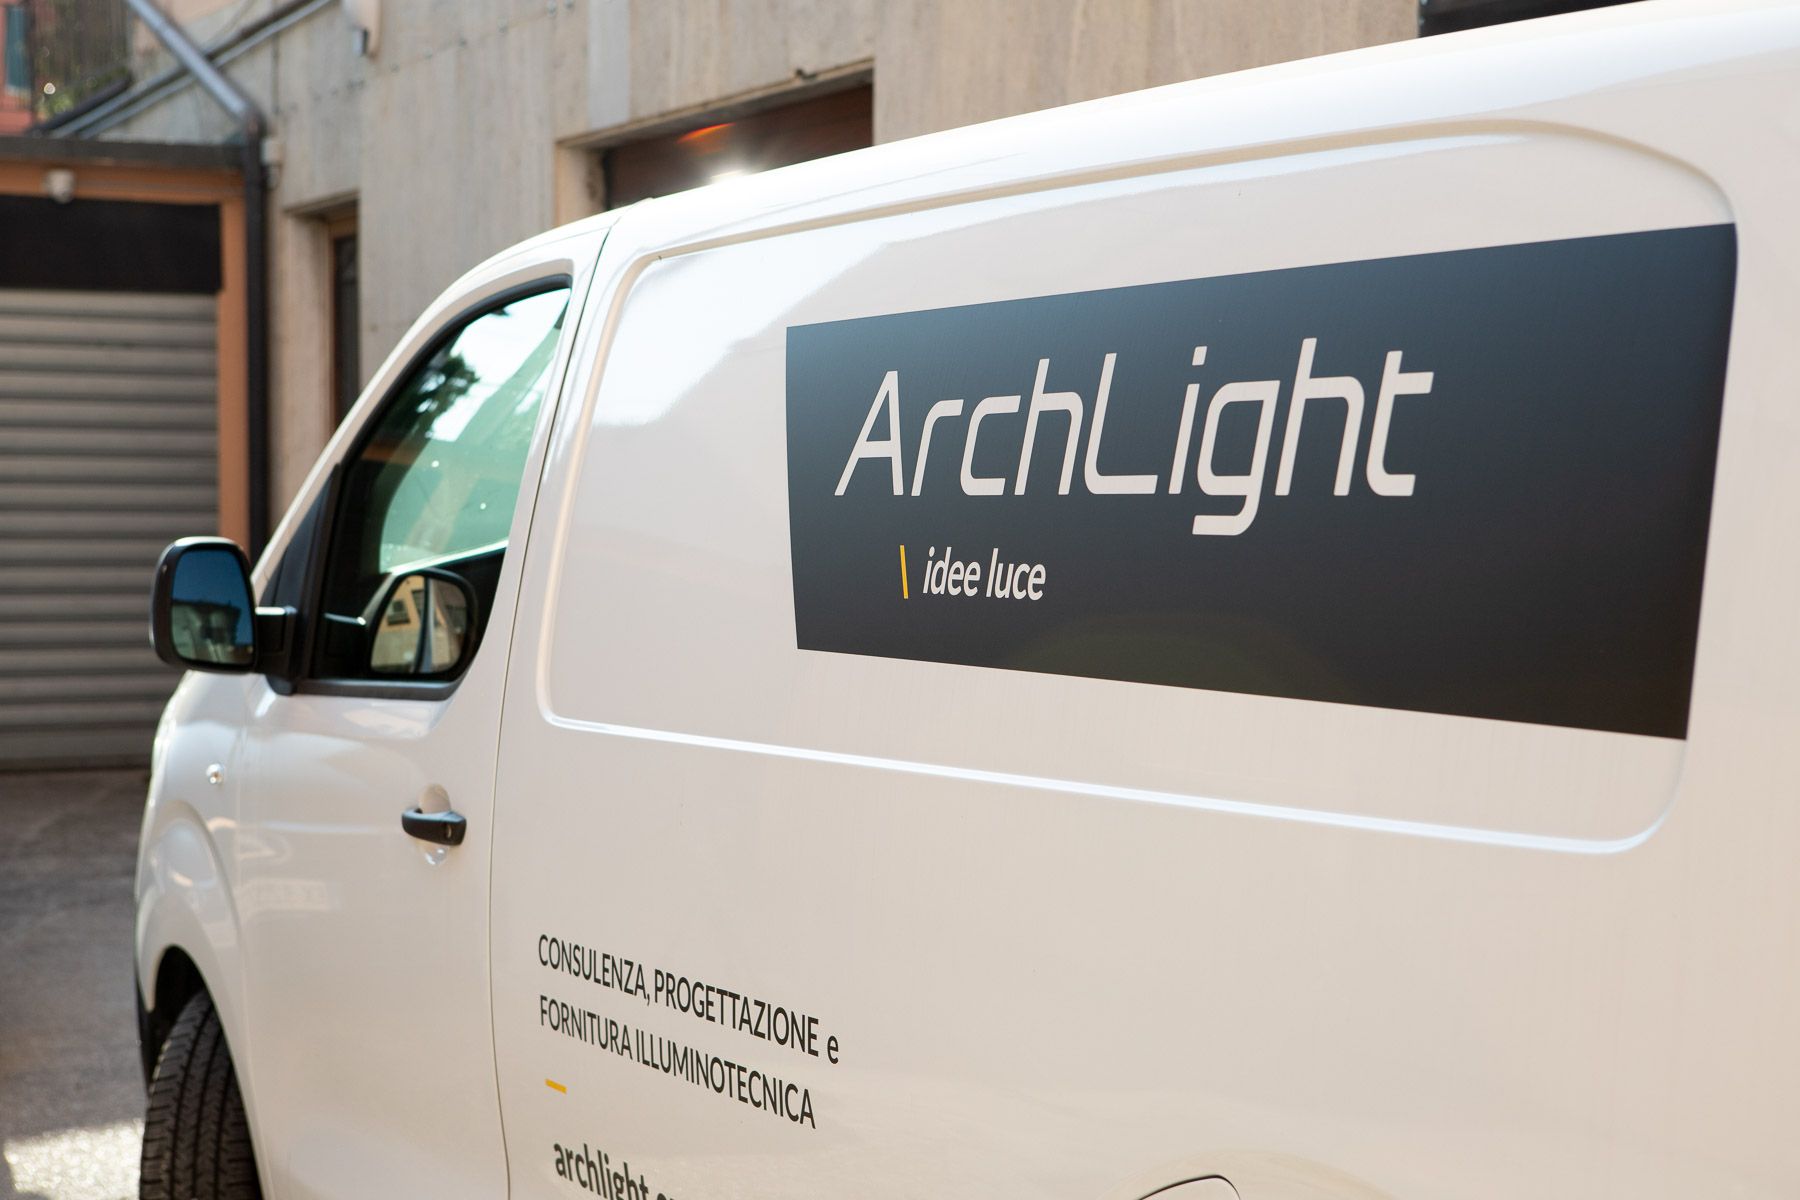 Fiancata furgone Archlight decorata con logo